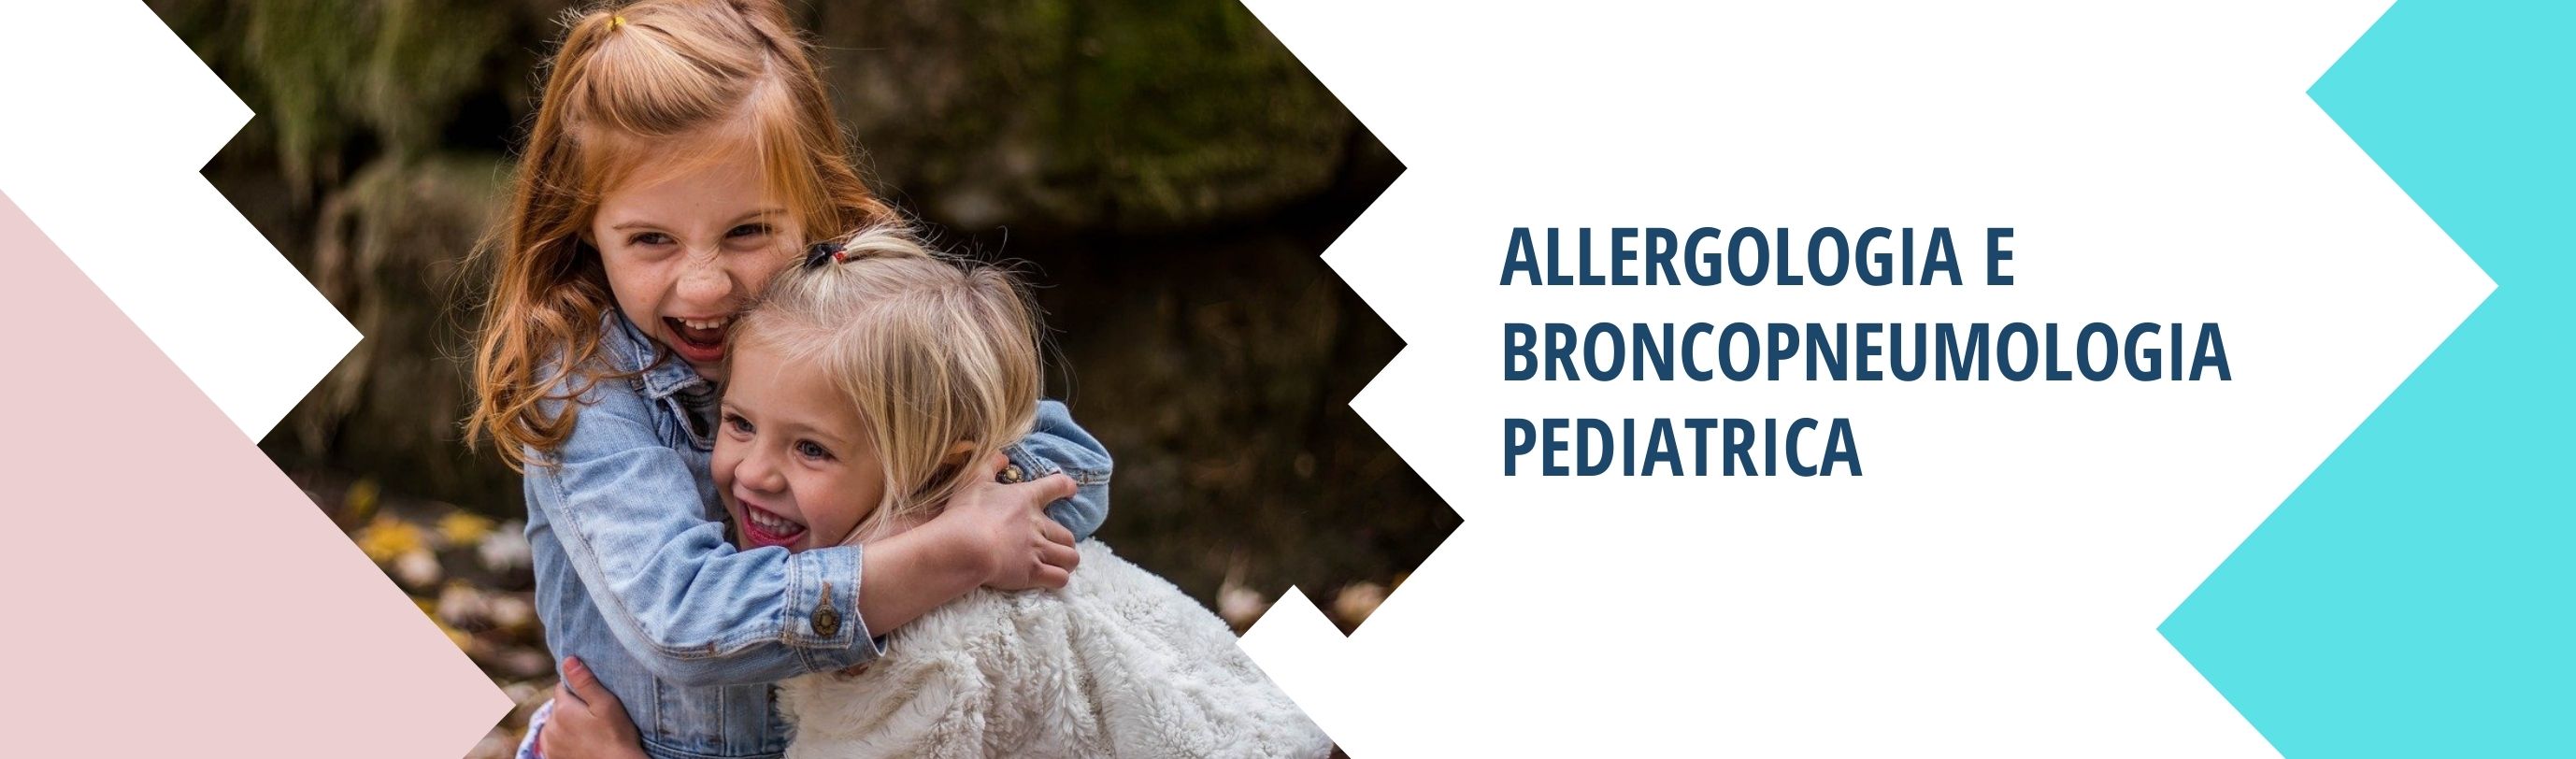 allergologia pediatrica